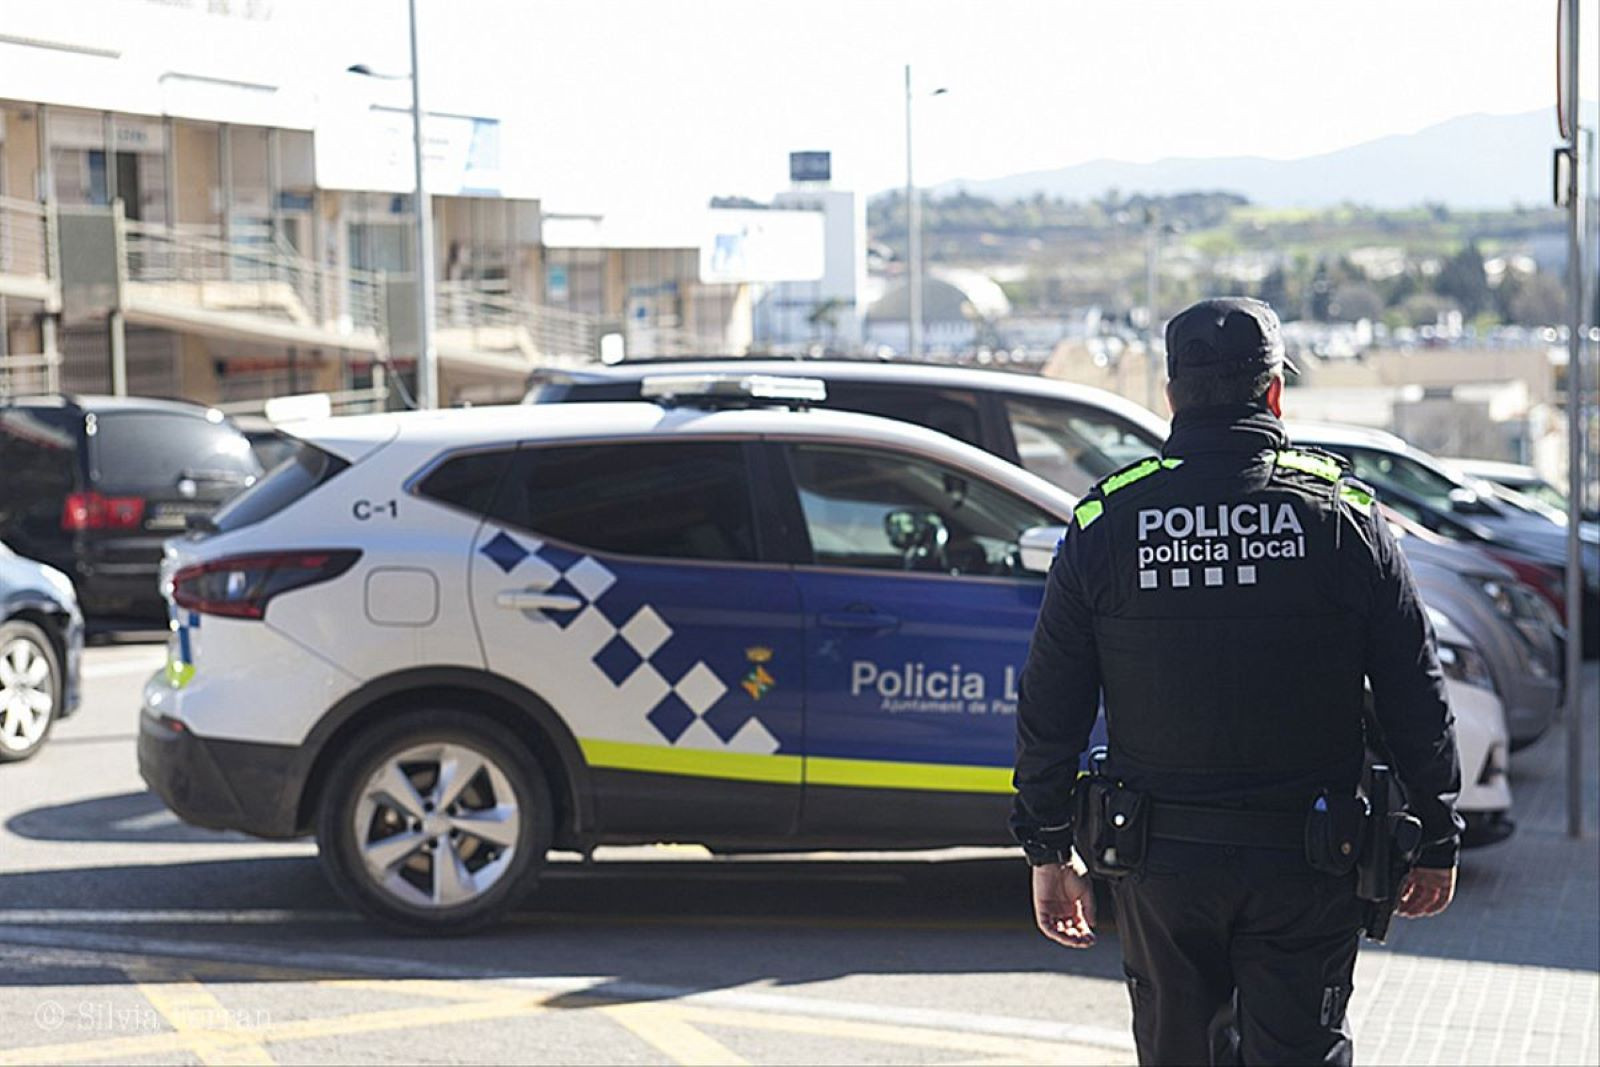 Policía Local de Parets del Vallès / AYUNTAMIENTO DE PARETS